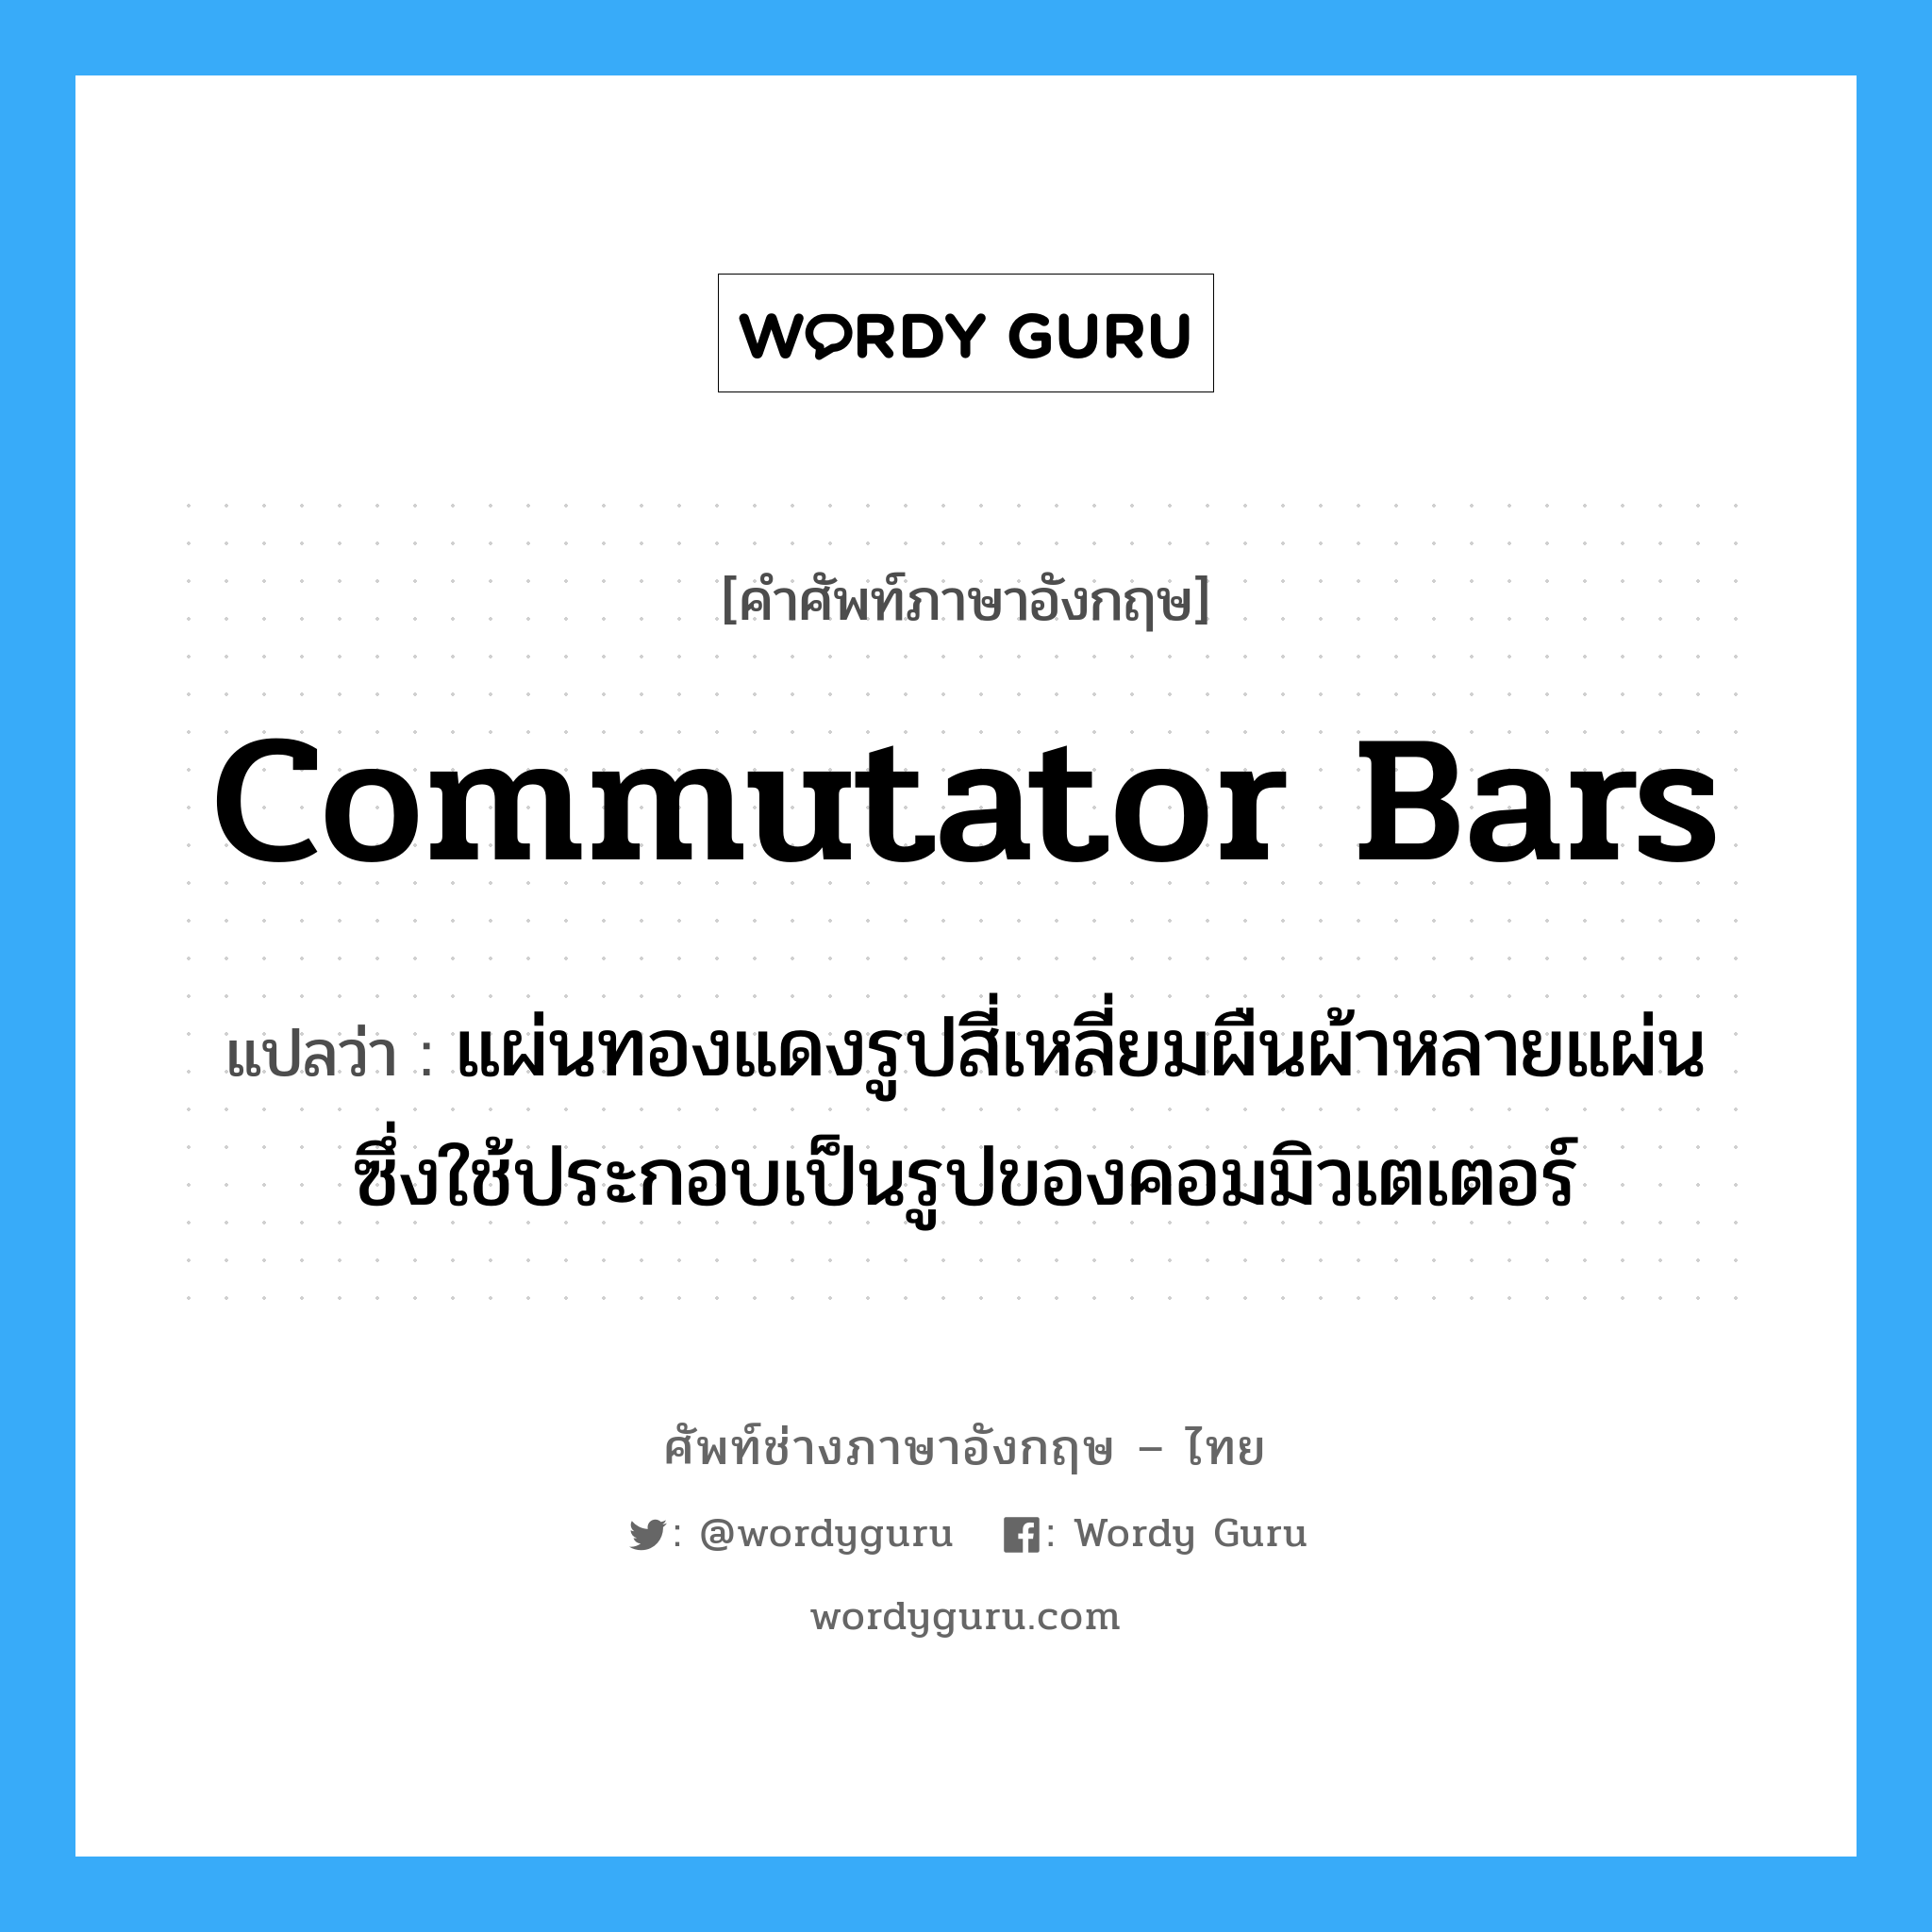 commutator bars แปลว่า?, คำศัพท์ช่างภาษาอังกฤษ - ไทย commutator bars คำศัพท์ภาษาอังกฤษ commutator bars แปลว่า แผ่นทองแดงรูปสี่เหลี่ยมผืนผ้าหลายแผ่น ซึ่งใช้ประกอบเป็นรูปของคอมมิวเตเตอร์